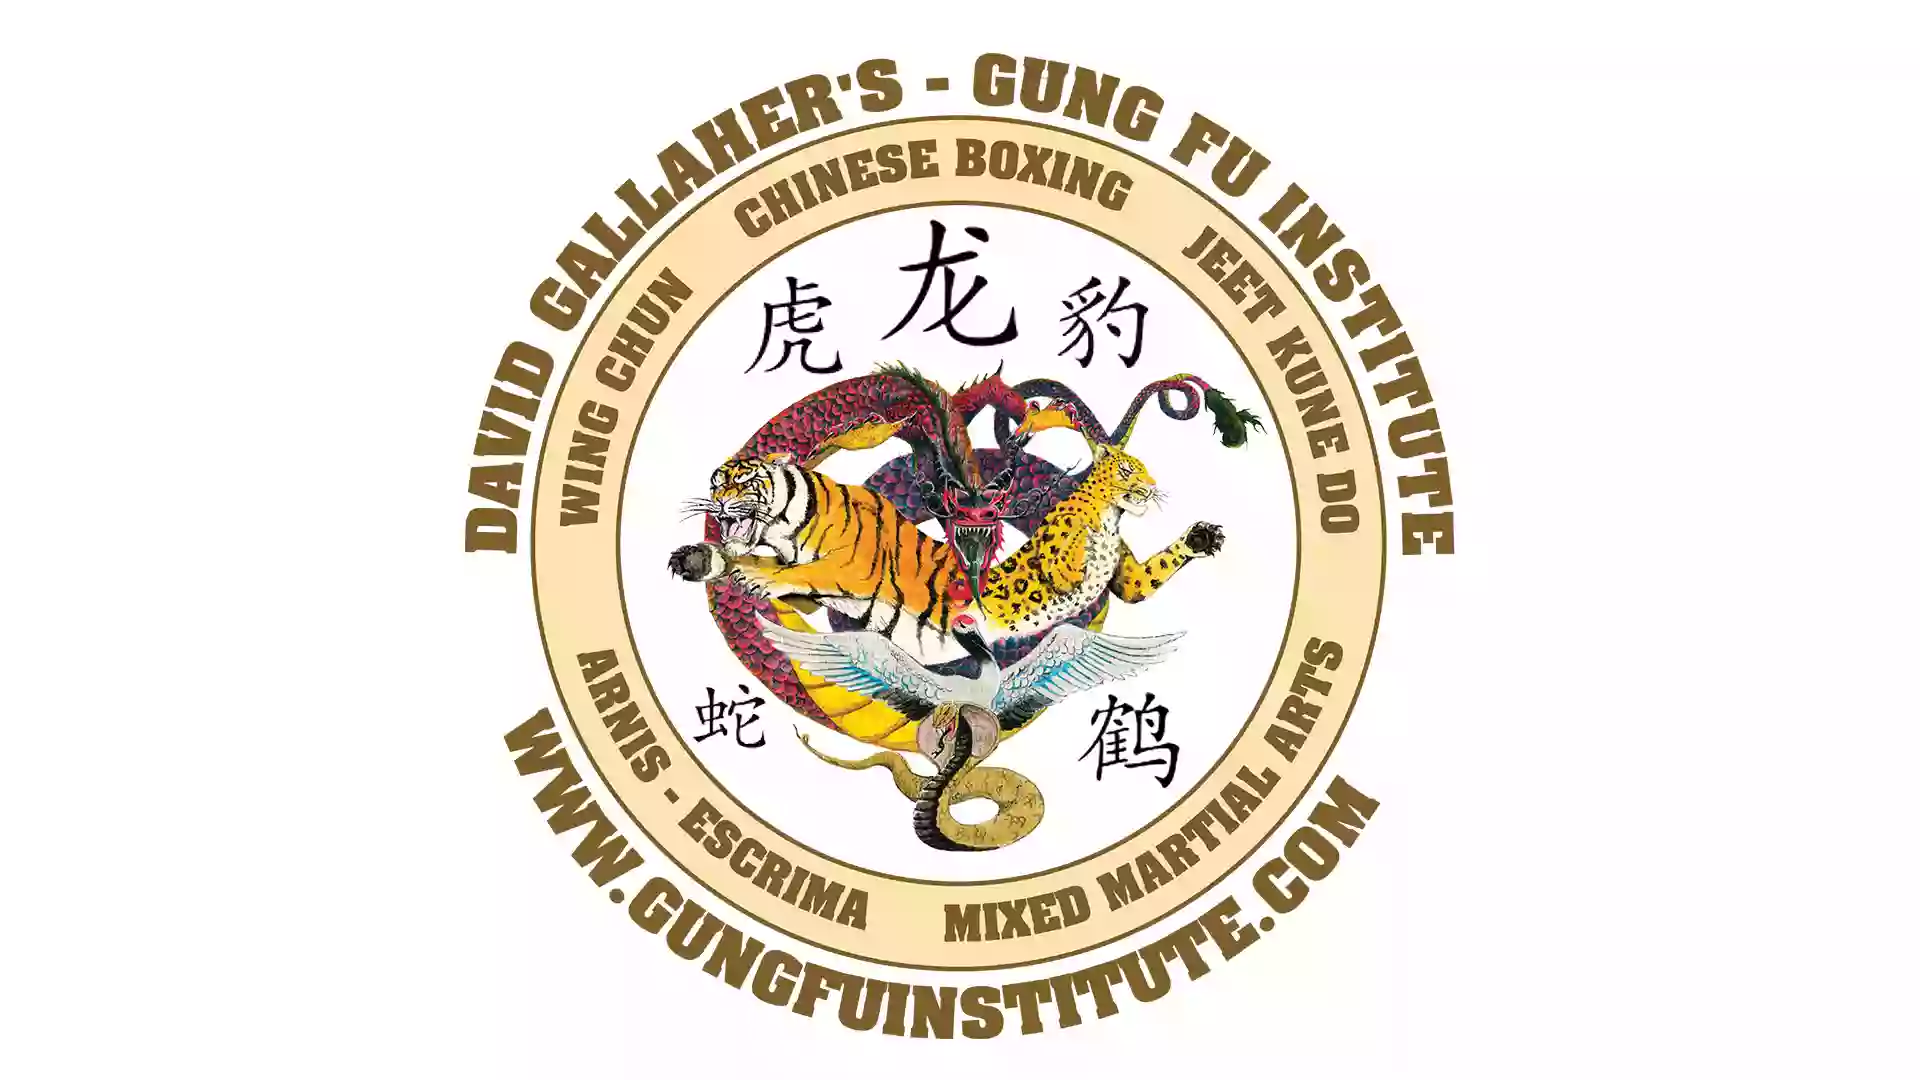 David Gallaher's Gung Fu Institute